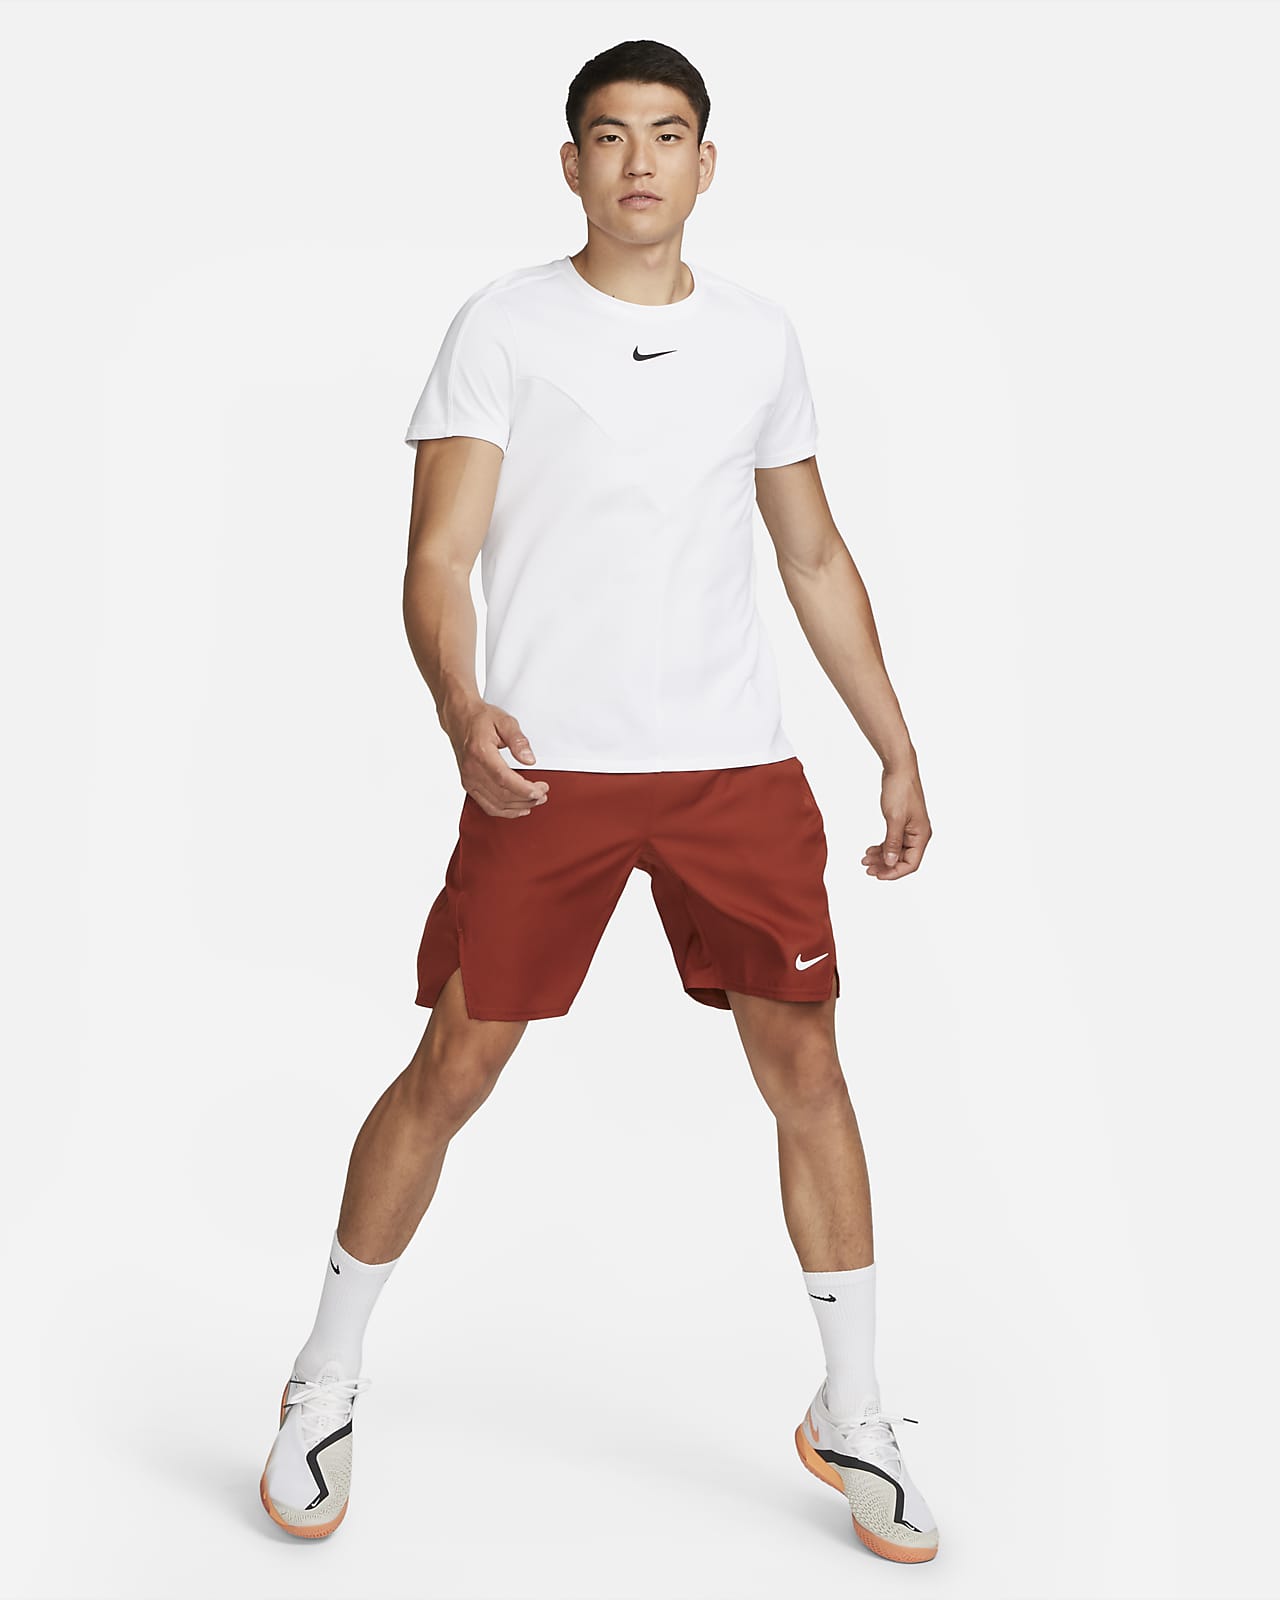 Geroosterd Ritmisch Rechtdoor NikeCourt Dri-FIT Victory Men's 9" Tennis Shorts. Nike.com